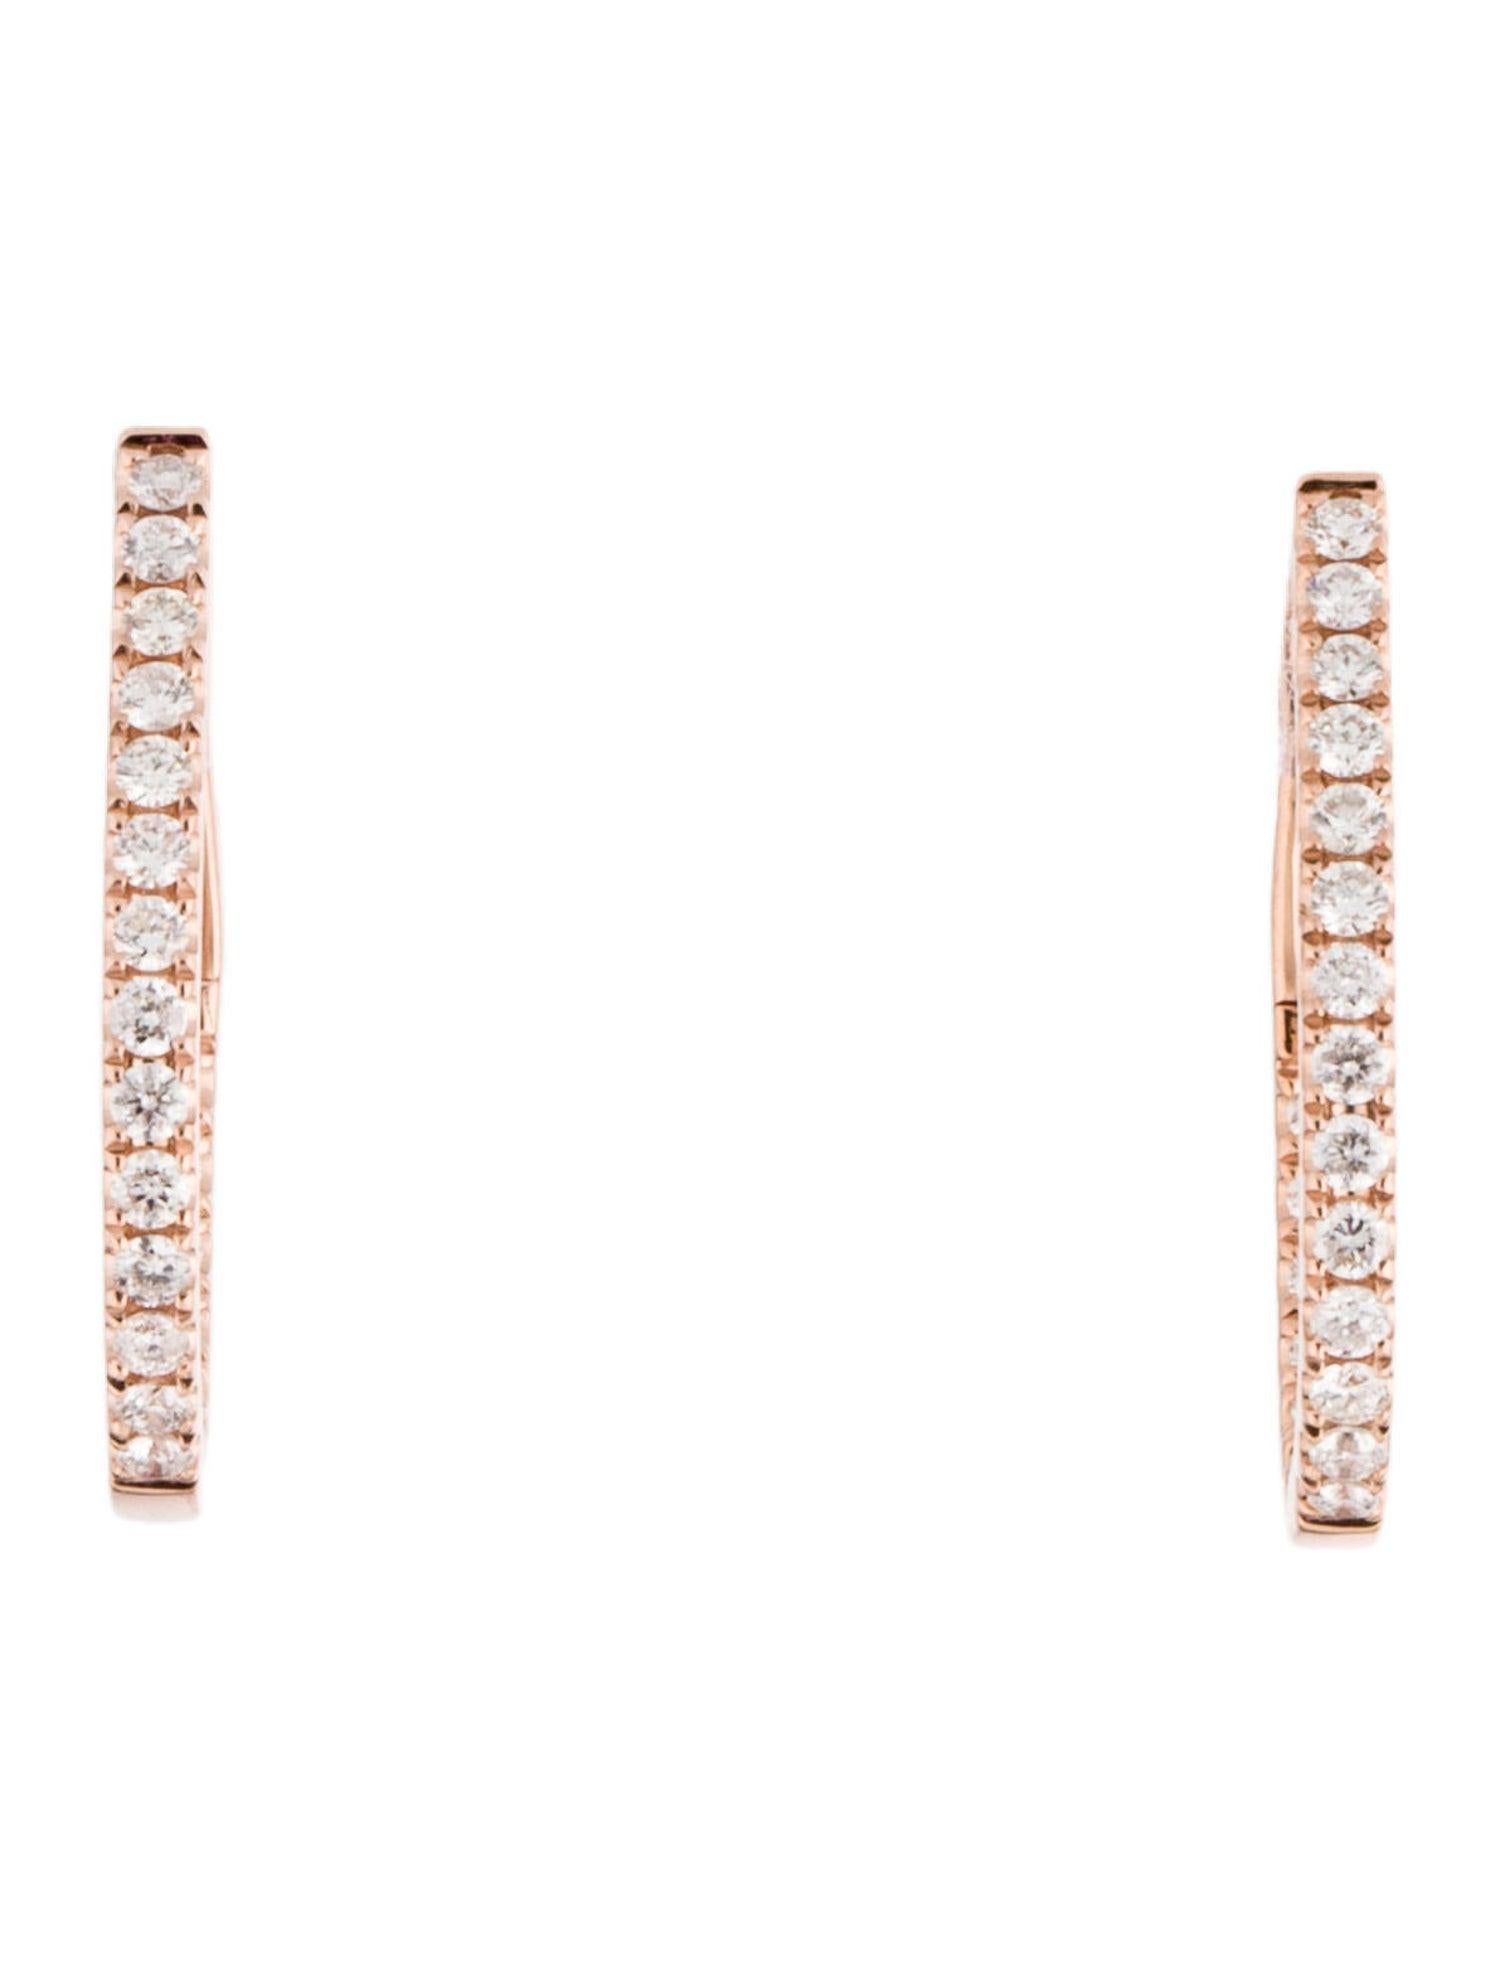 Des anneaux en diamant de qualité : Fabriqués à partir d'or véritable 14k et de 44 diamants blancs naturels scintillants d'environ 0,65 ct. Diamants certifiés, avec une seule rangée de diamants blancs à l'intérieur et à l'extérieur des boucles